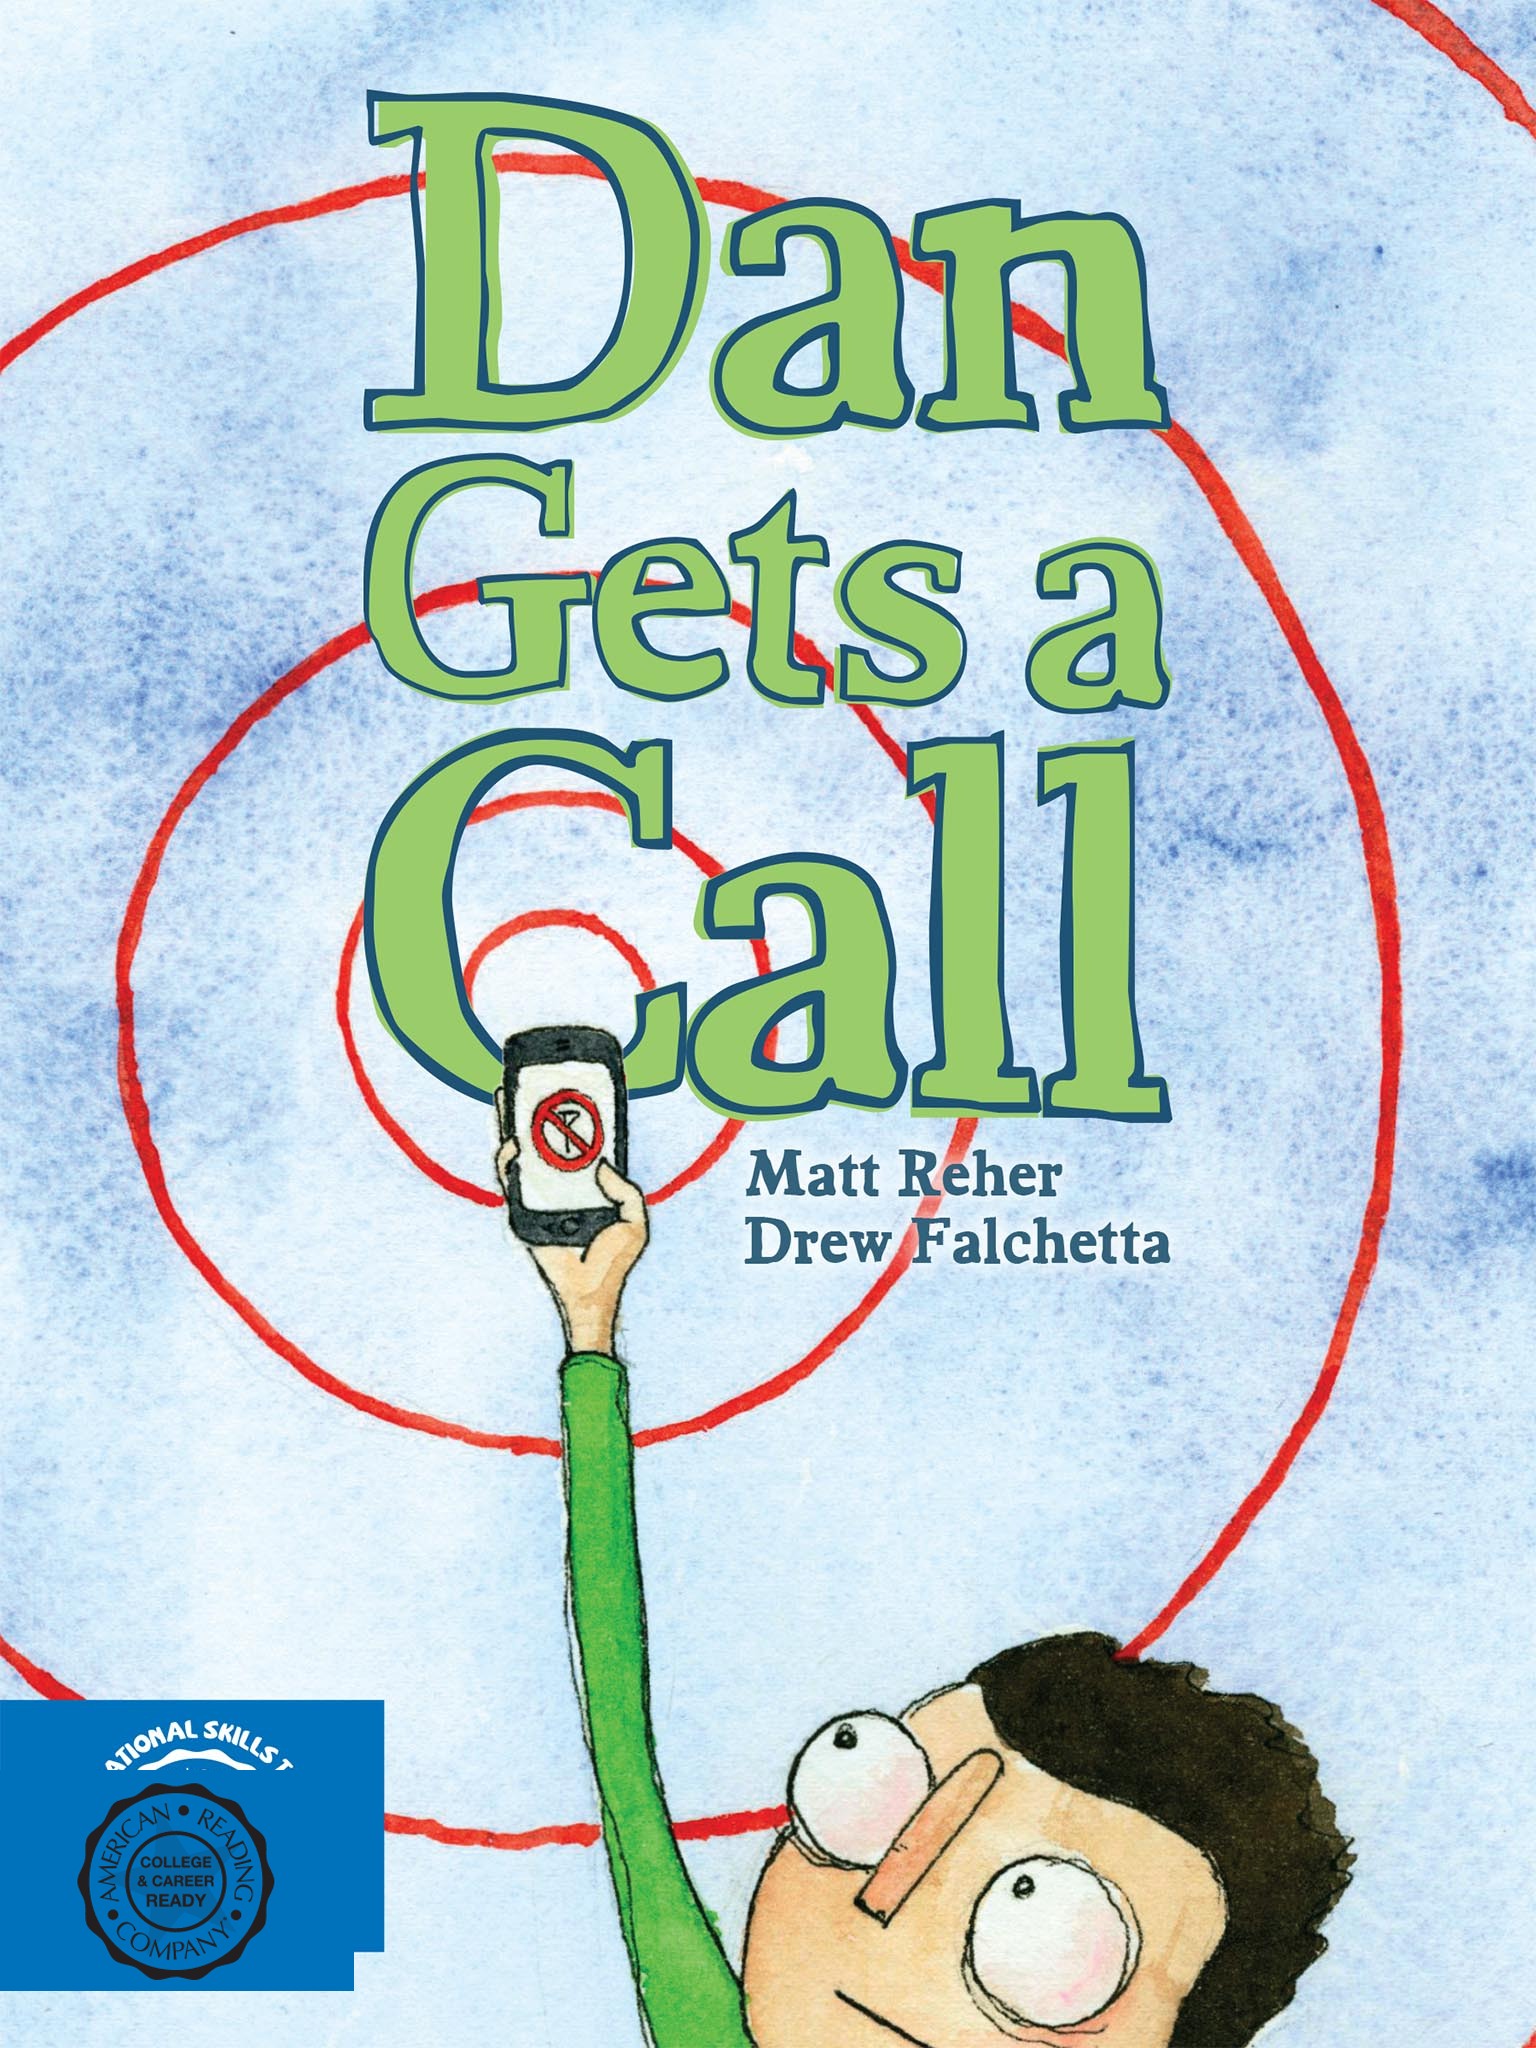 Dan Gets a Cat by Matt Reher (9781634376549)